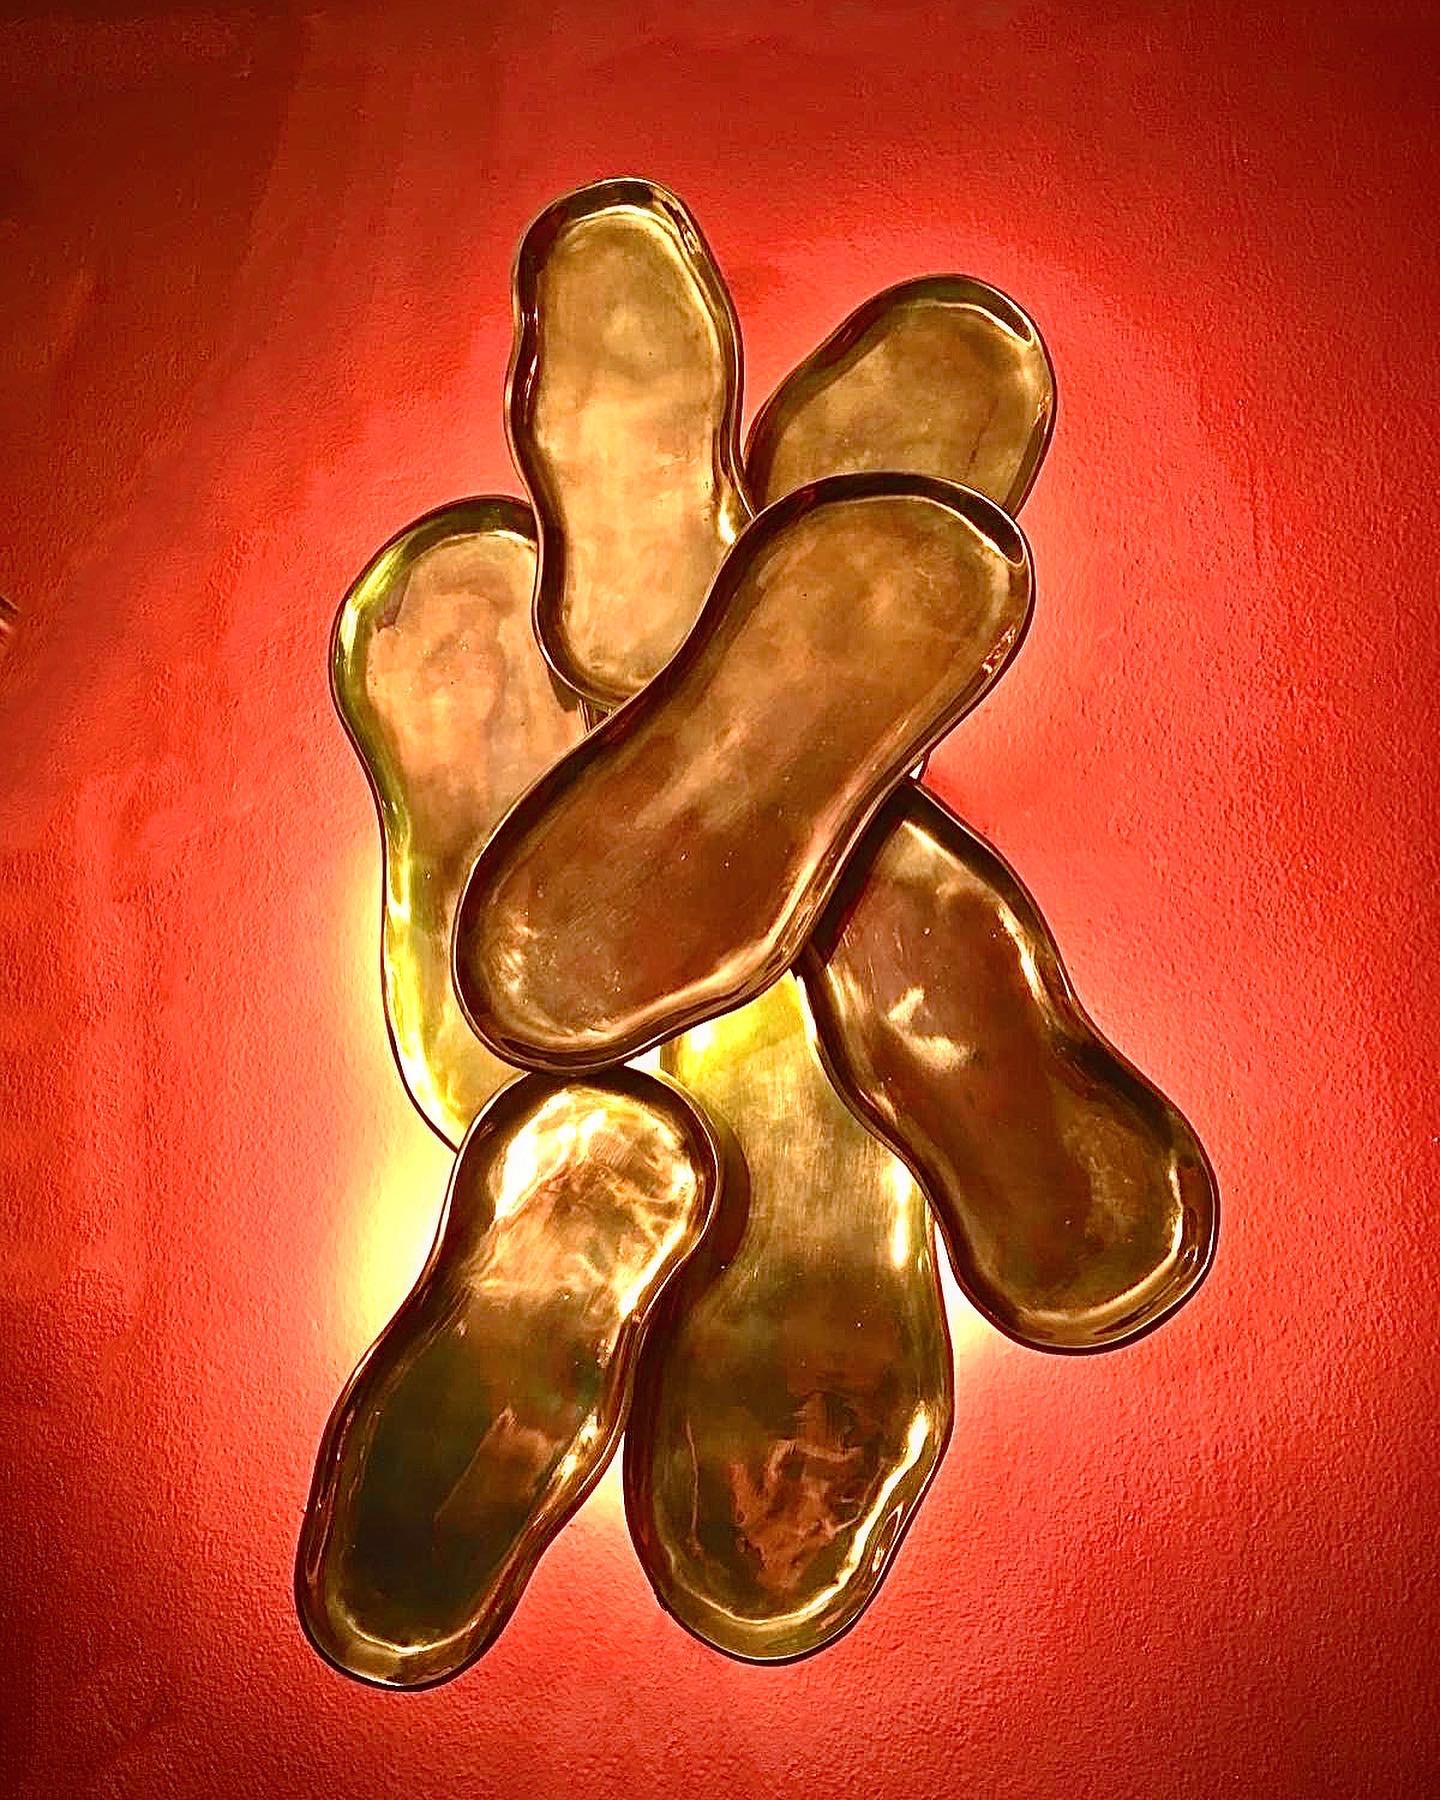 L'applique murale en laiton coulé Sedayer est un luminaire unique et élégant, conçu sous la forme d'une grappe de coquilles de cacahuètes. Il est fabriqué en laiton moulé de haute qualité, ce qui garantit sa durabilité et sa longévité. L'applique